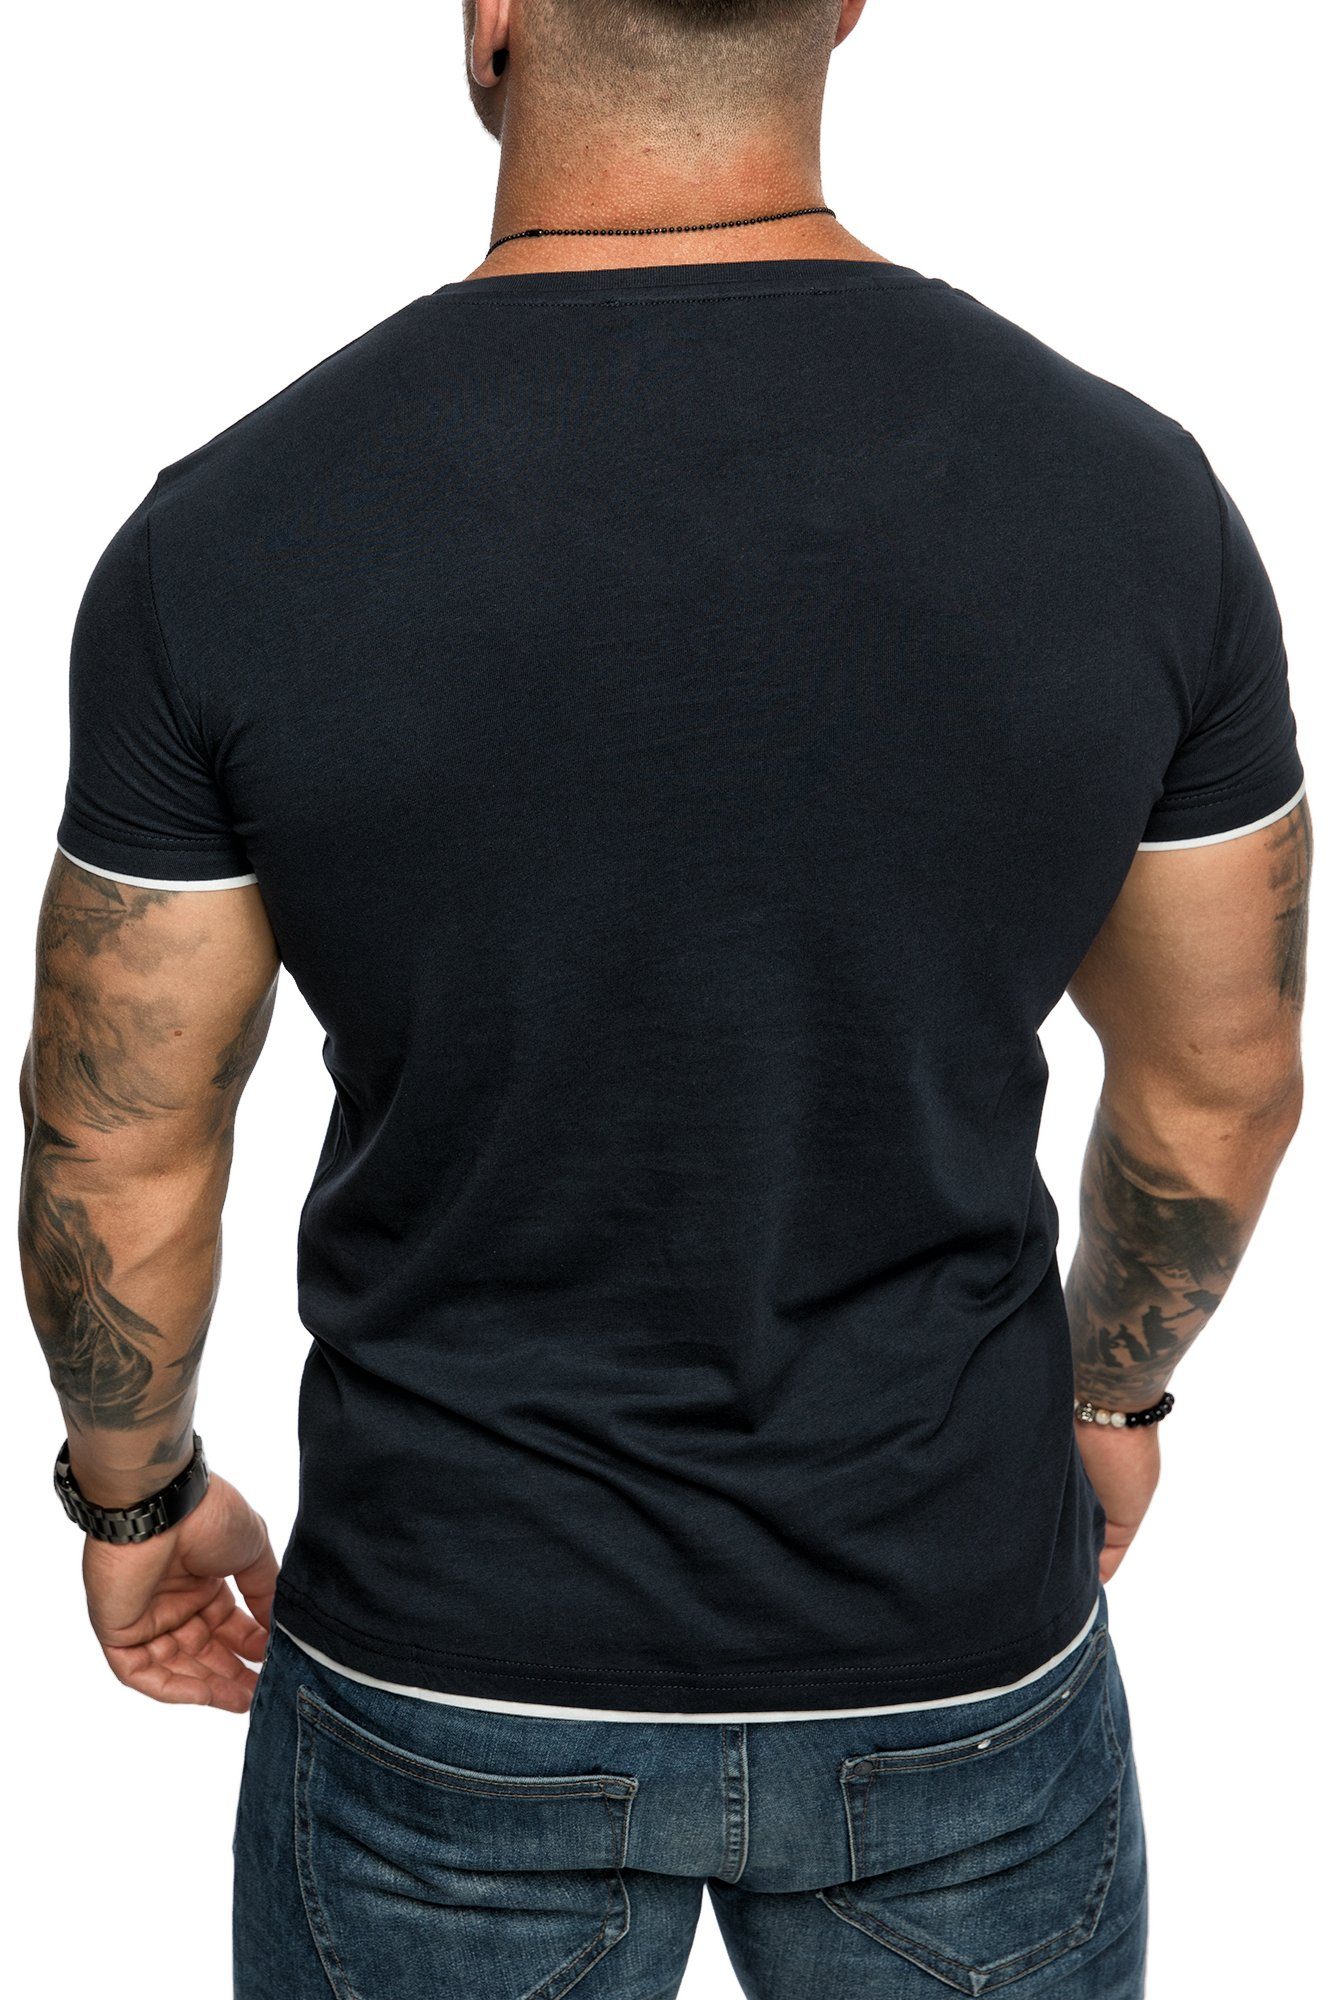 Rundhalsausschnitt Navyblau/Weiß T-Shirt Doppel Farbig Basic Shirt mit Herren Slim-Fit Amaci&Sons LAKEWOOD